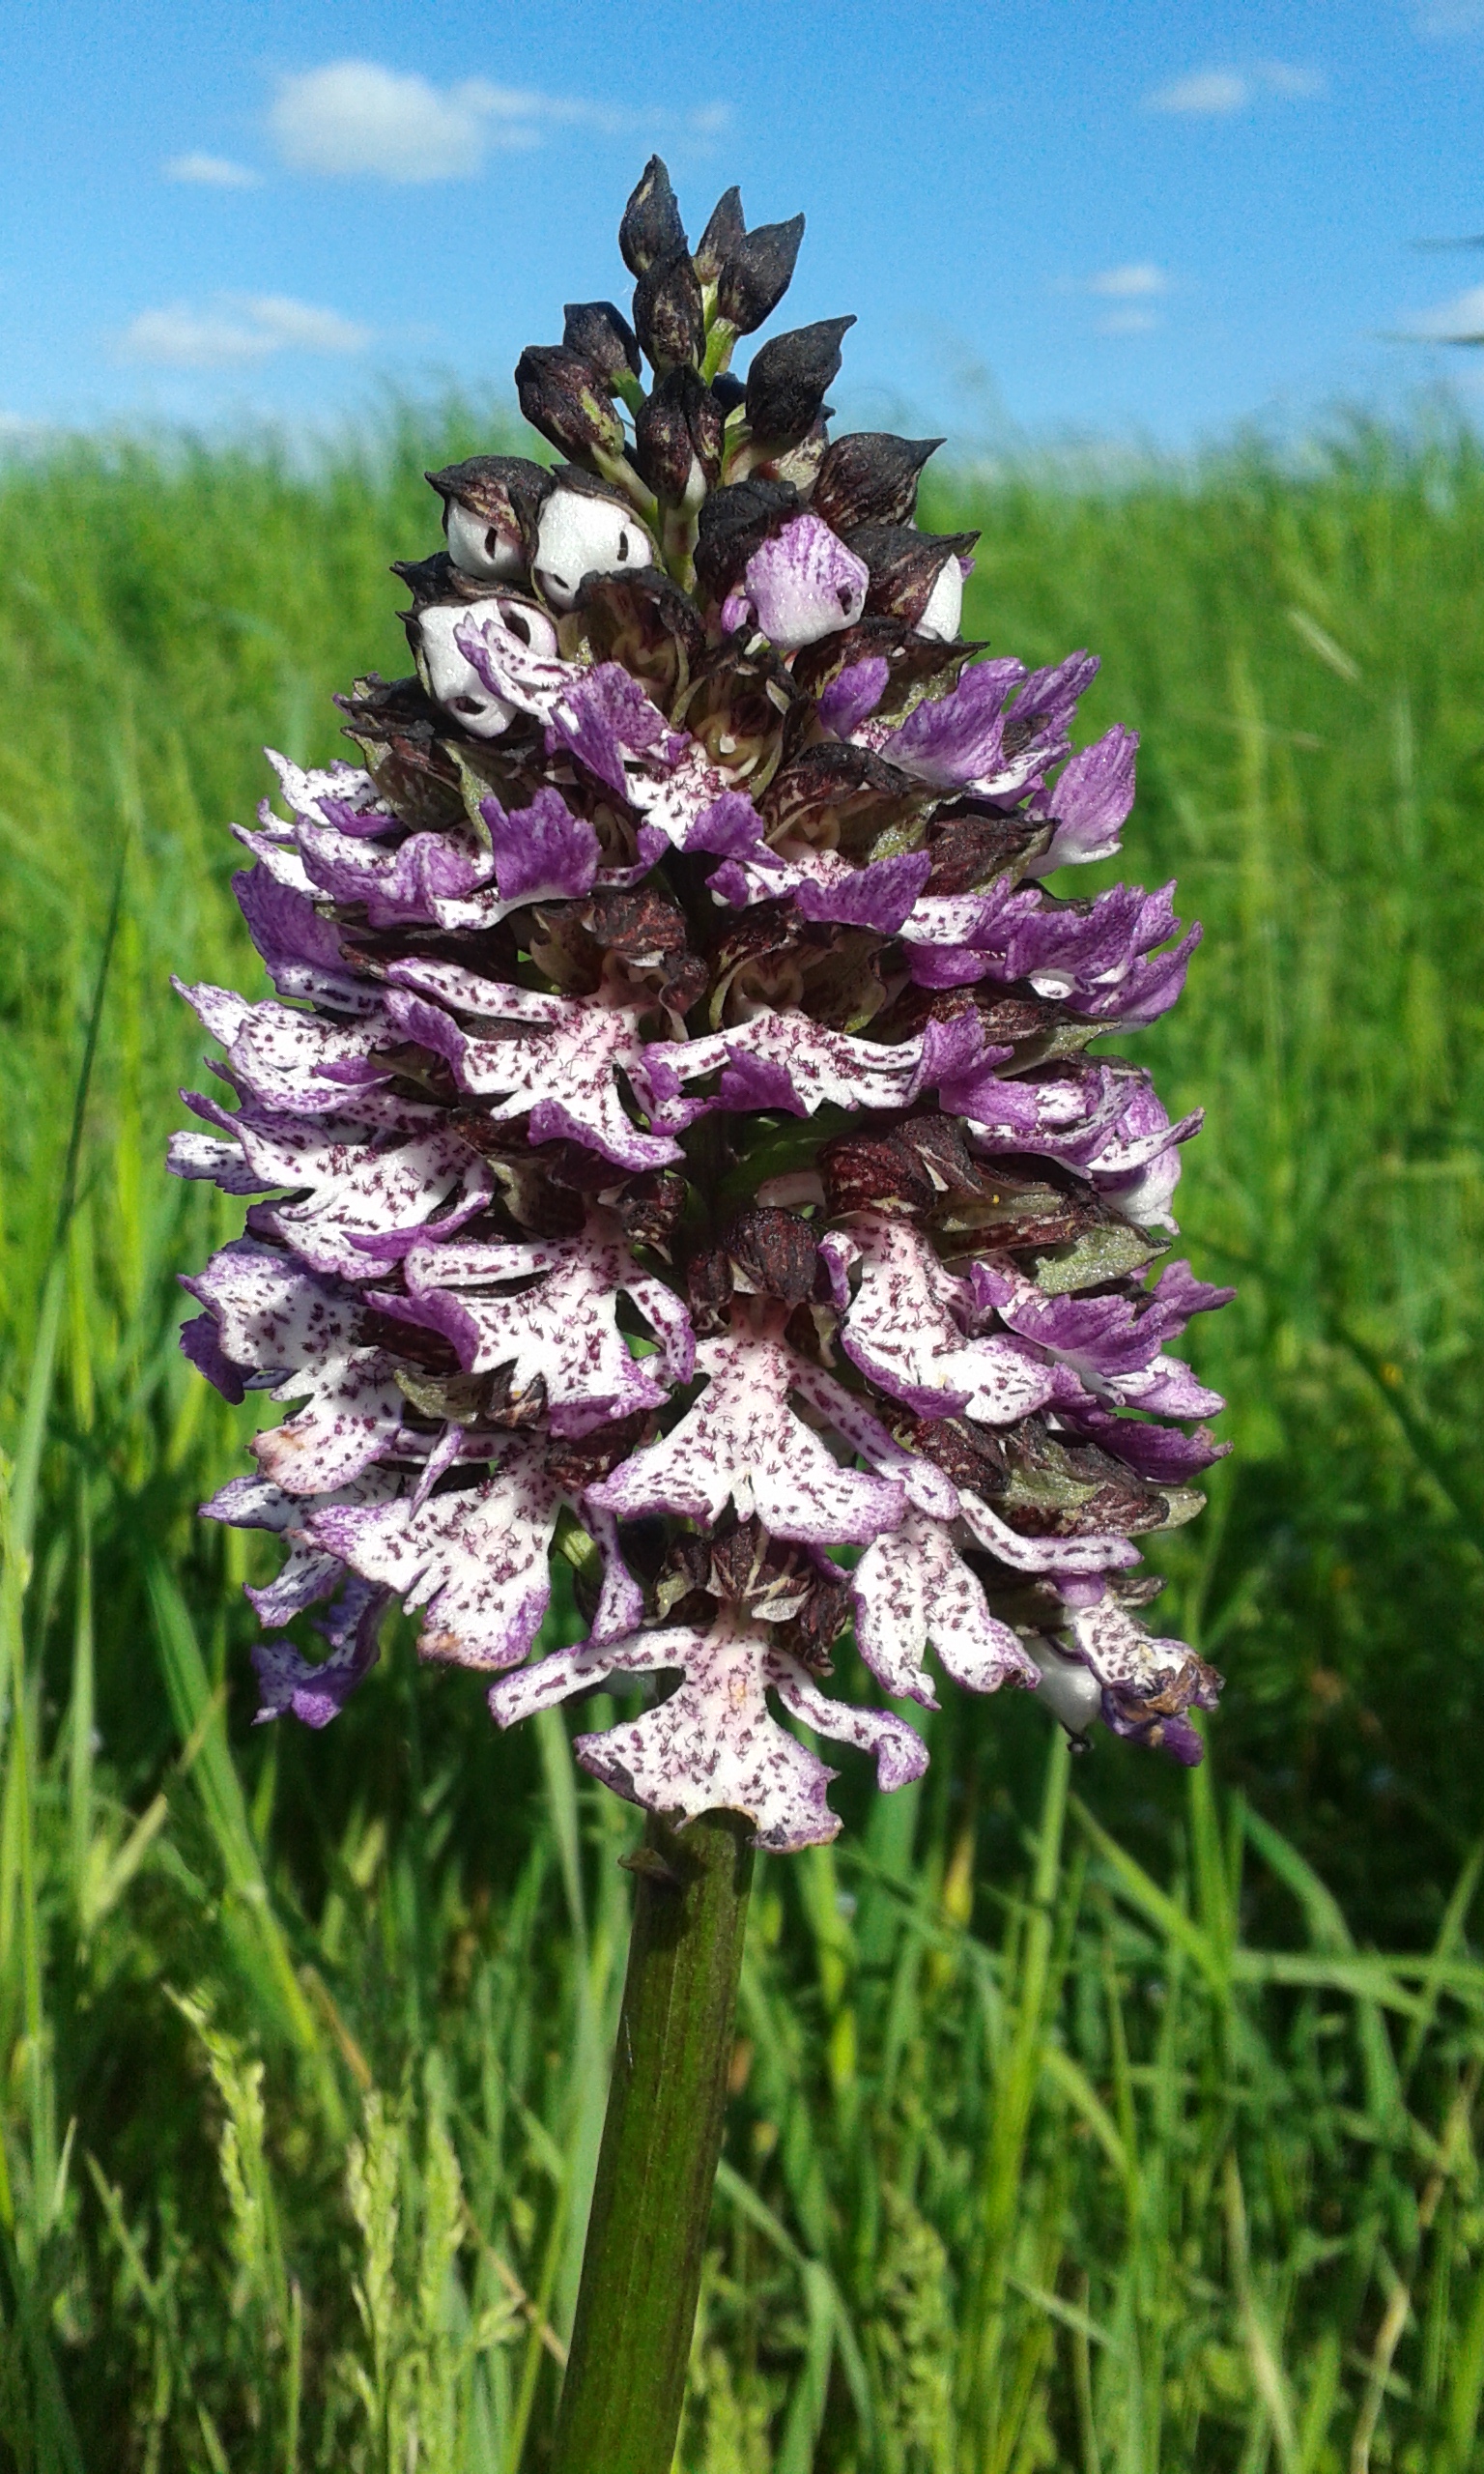 ESPERTA Srl - Riconoscere le orchidee selvatiche del Parco Fluviale del Taro - Collecchio (Parma) - Parchi del Ducato.